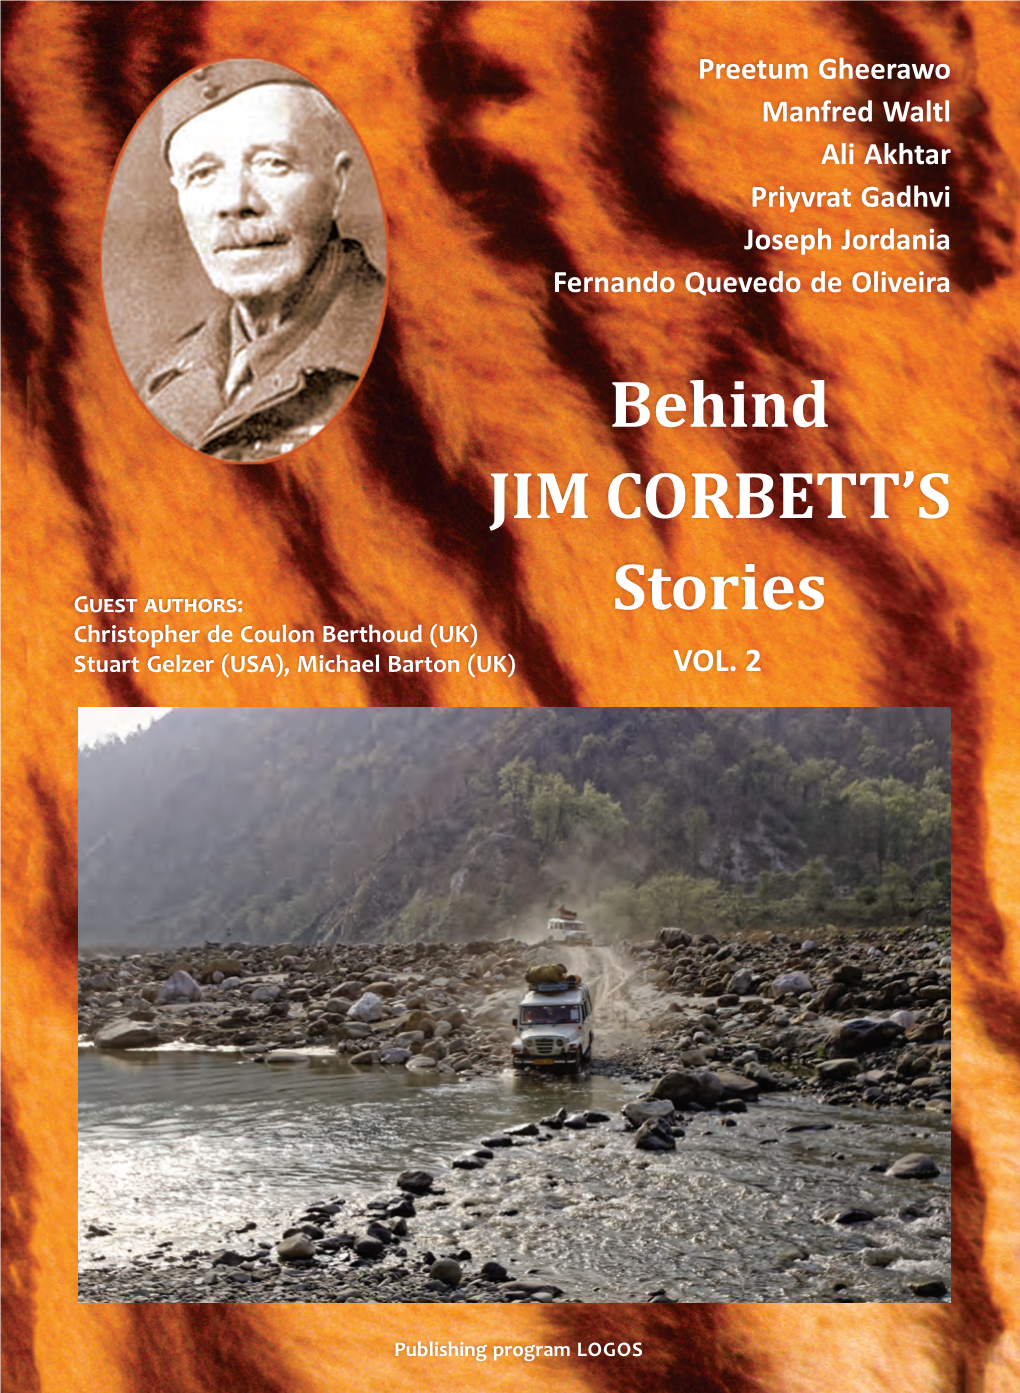 Behin D JIM CORBETT's Stories